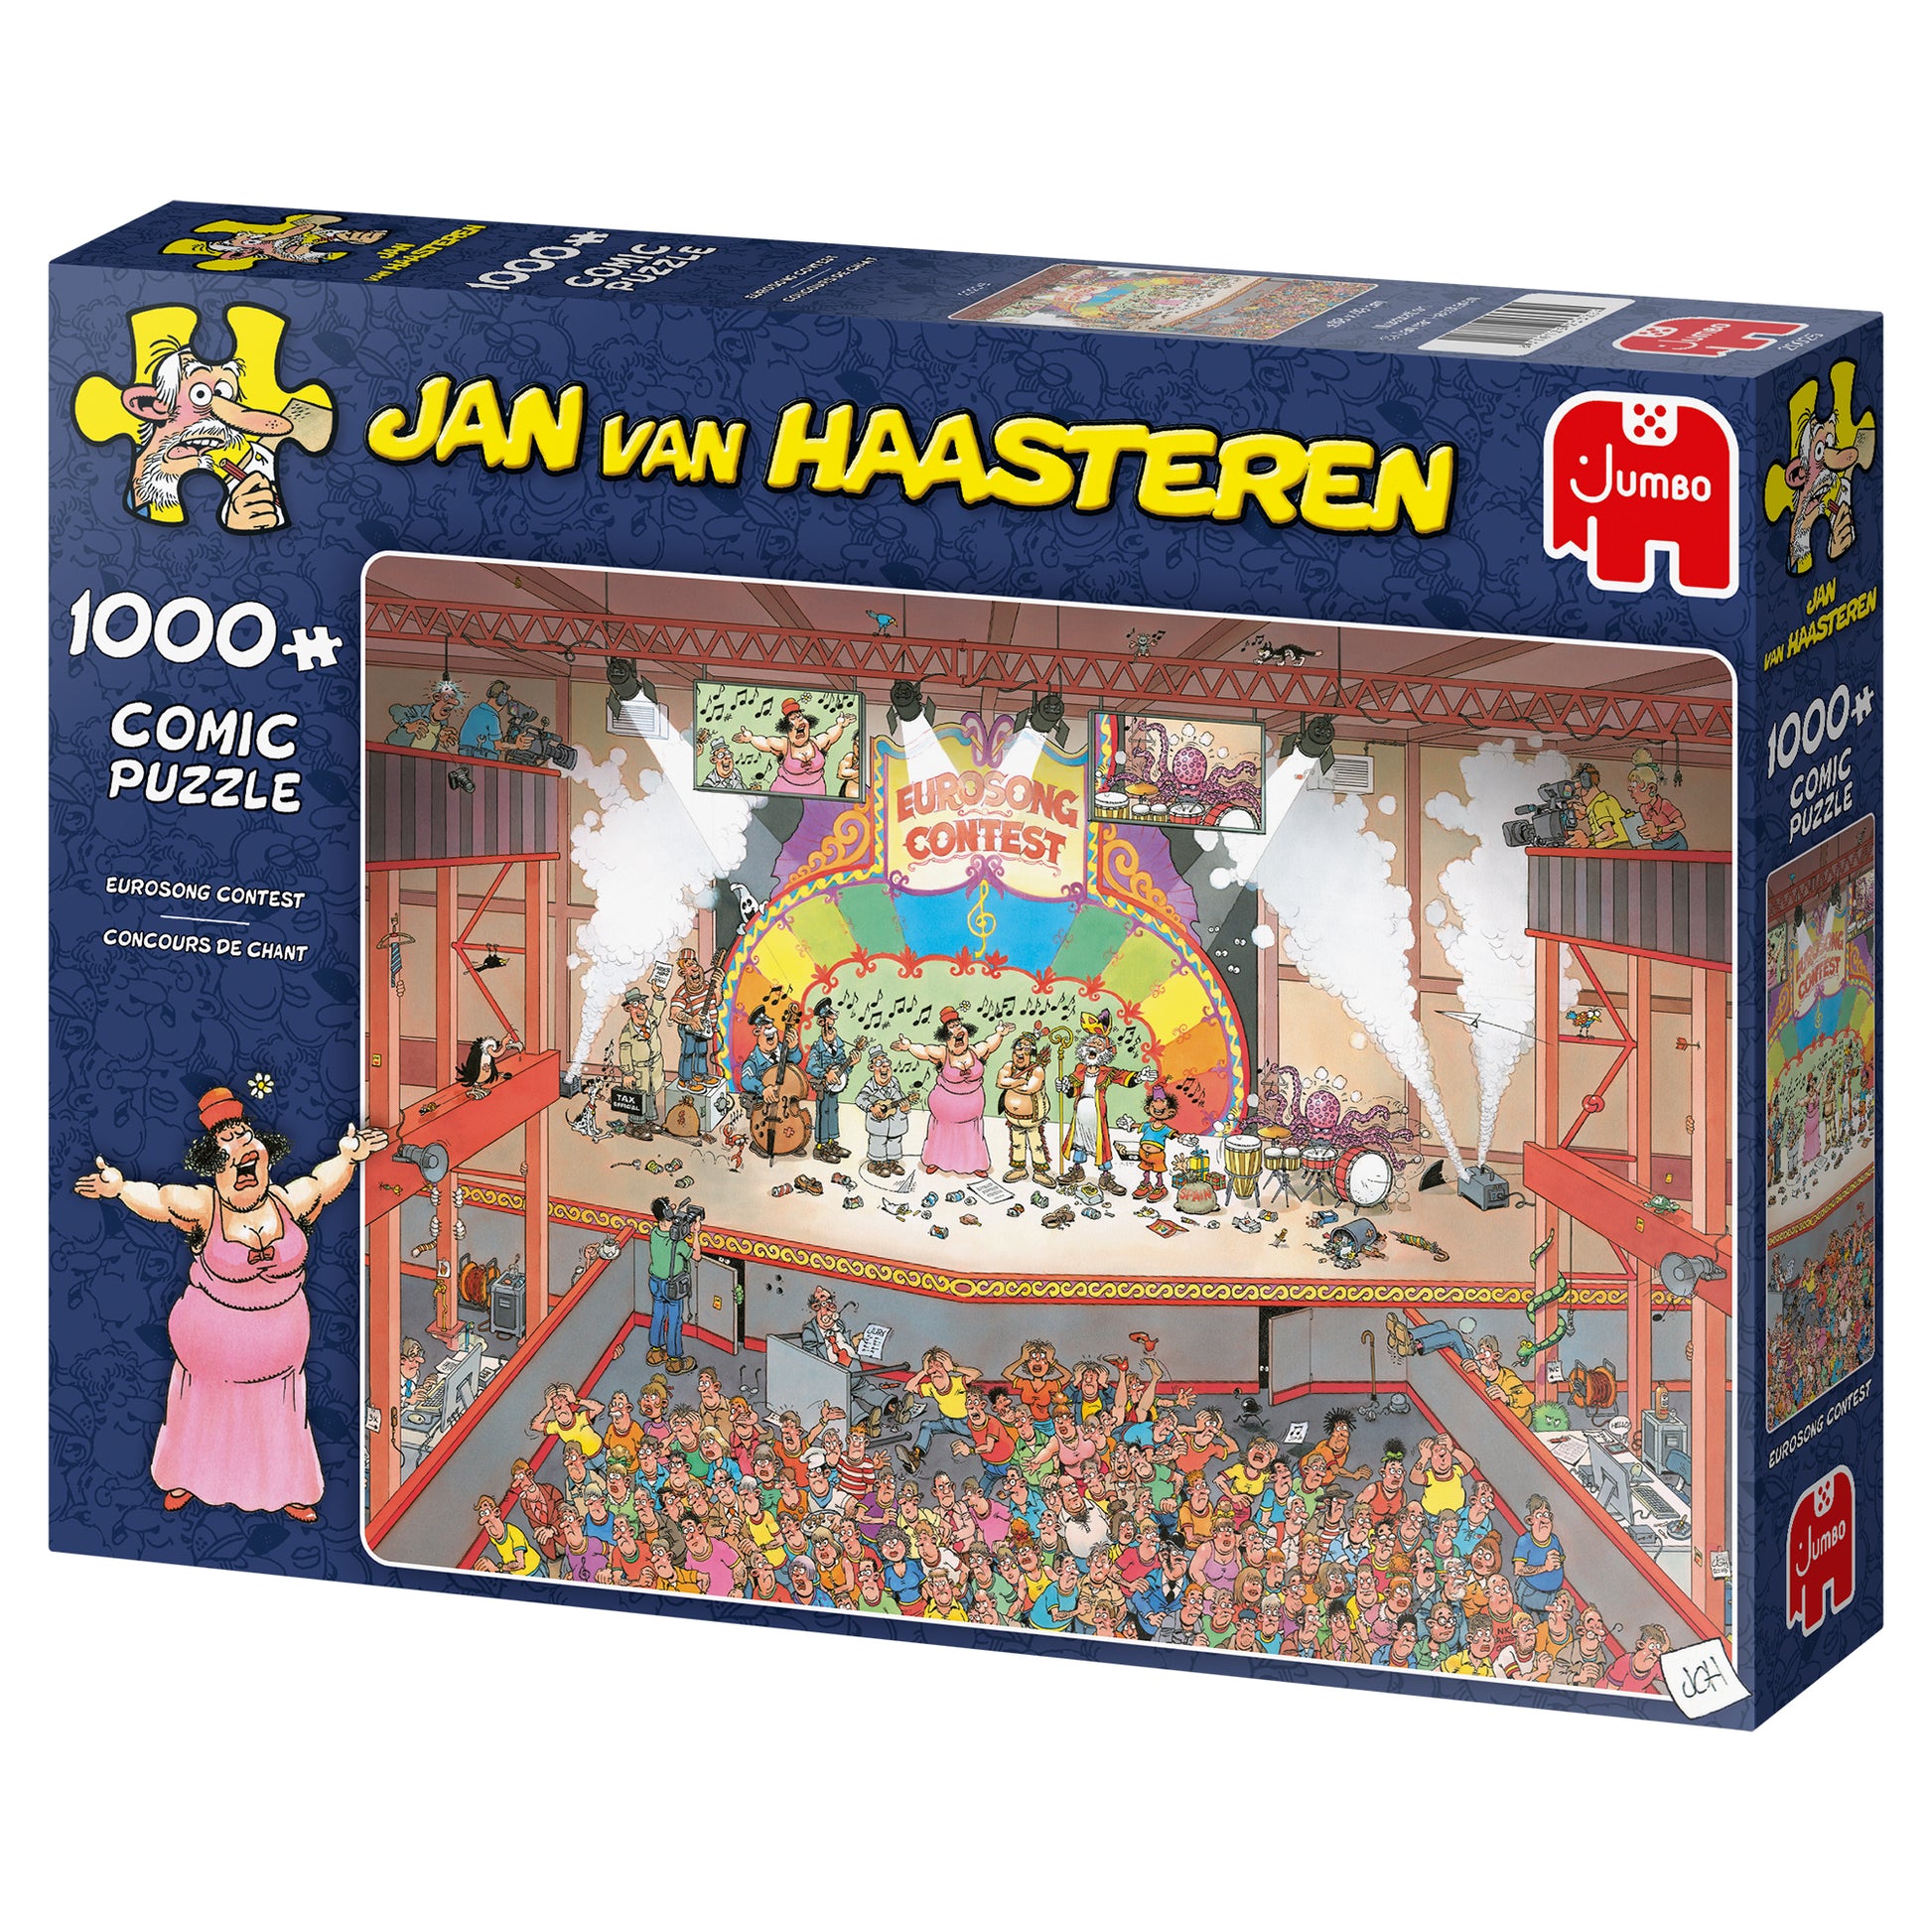 Jan van Haasteren - Eurosong Contest (1000 pieces) - product image - Jumboplay.com